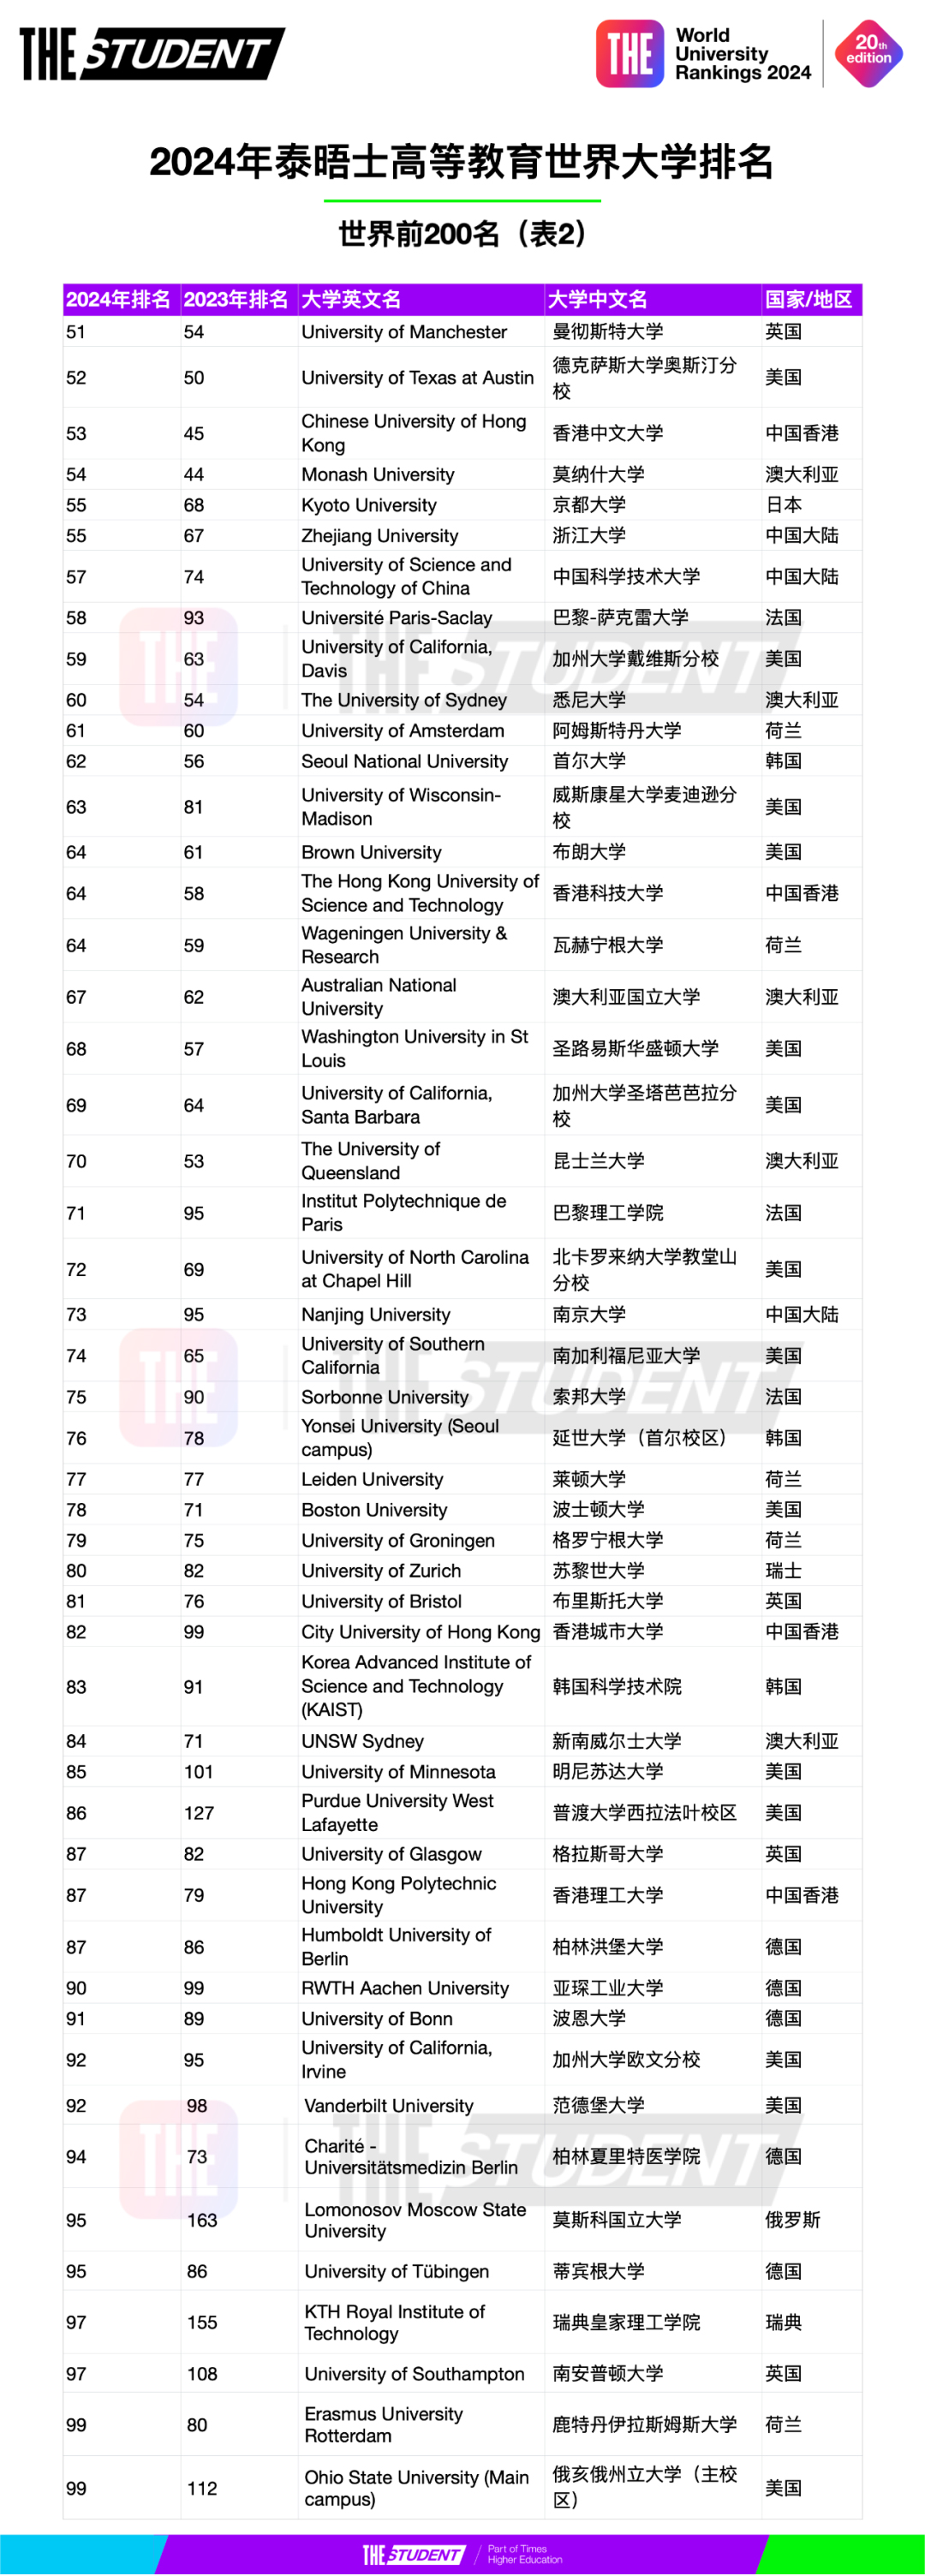 2024年泰晤士高等教育世界大学排名 (2).jpg